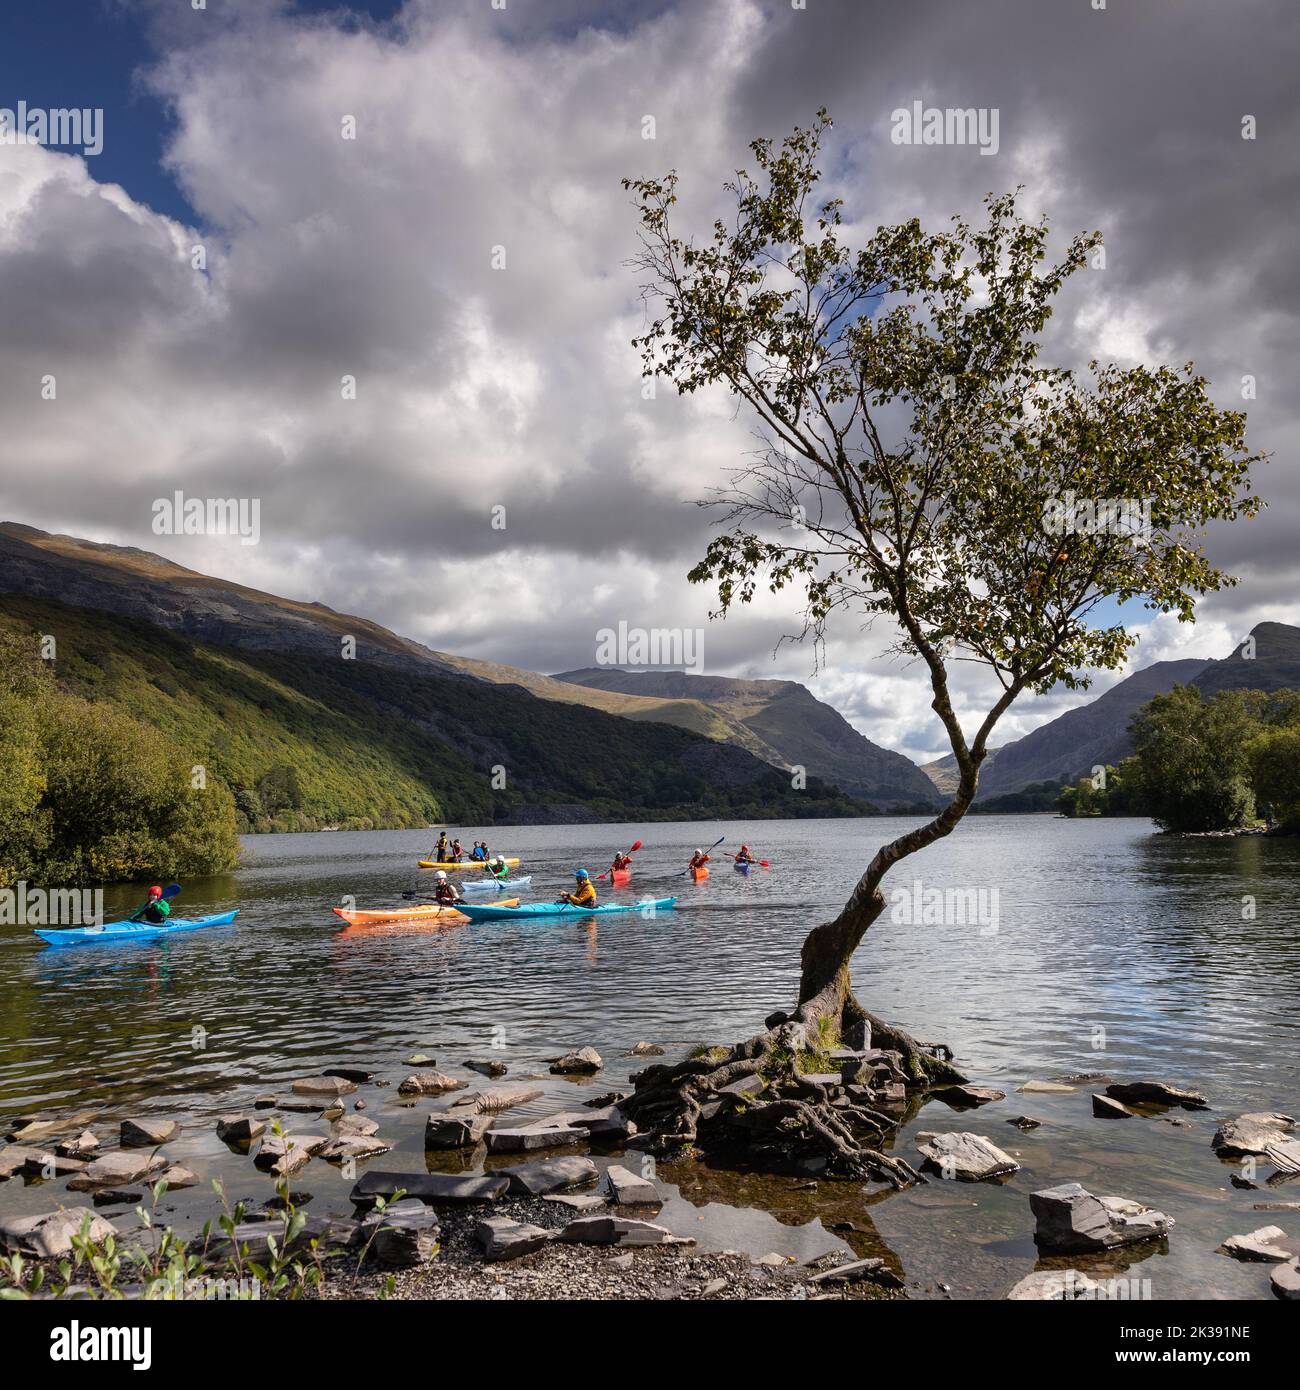 Arbre solitaire avec canoës, Llanberis, Snowdonia, pays de Galles du Nord Banque D'Images